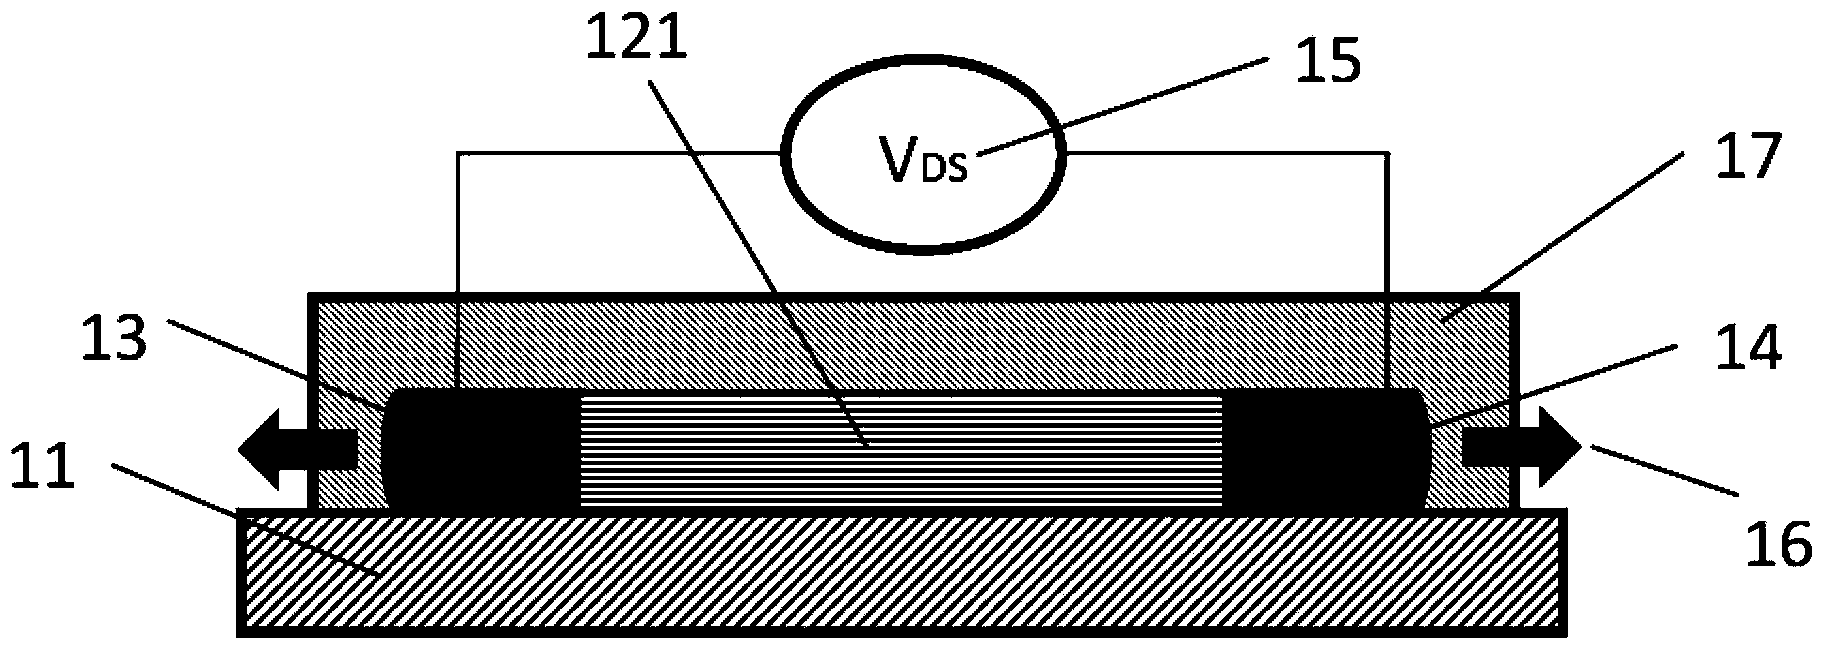 Transistor and transistor array